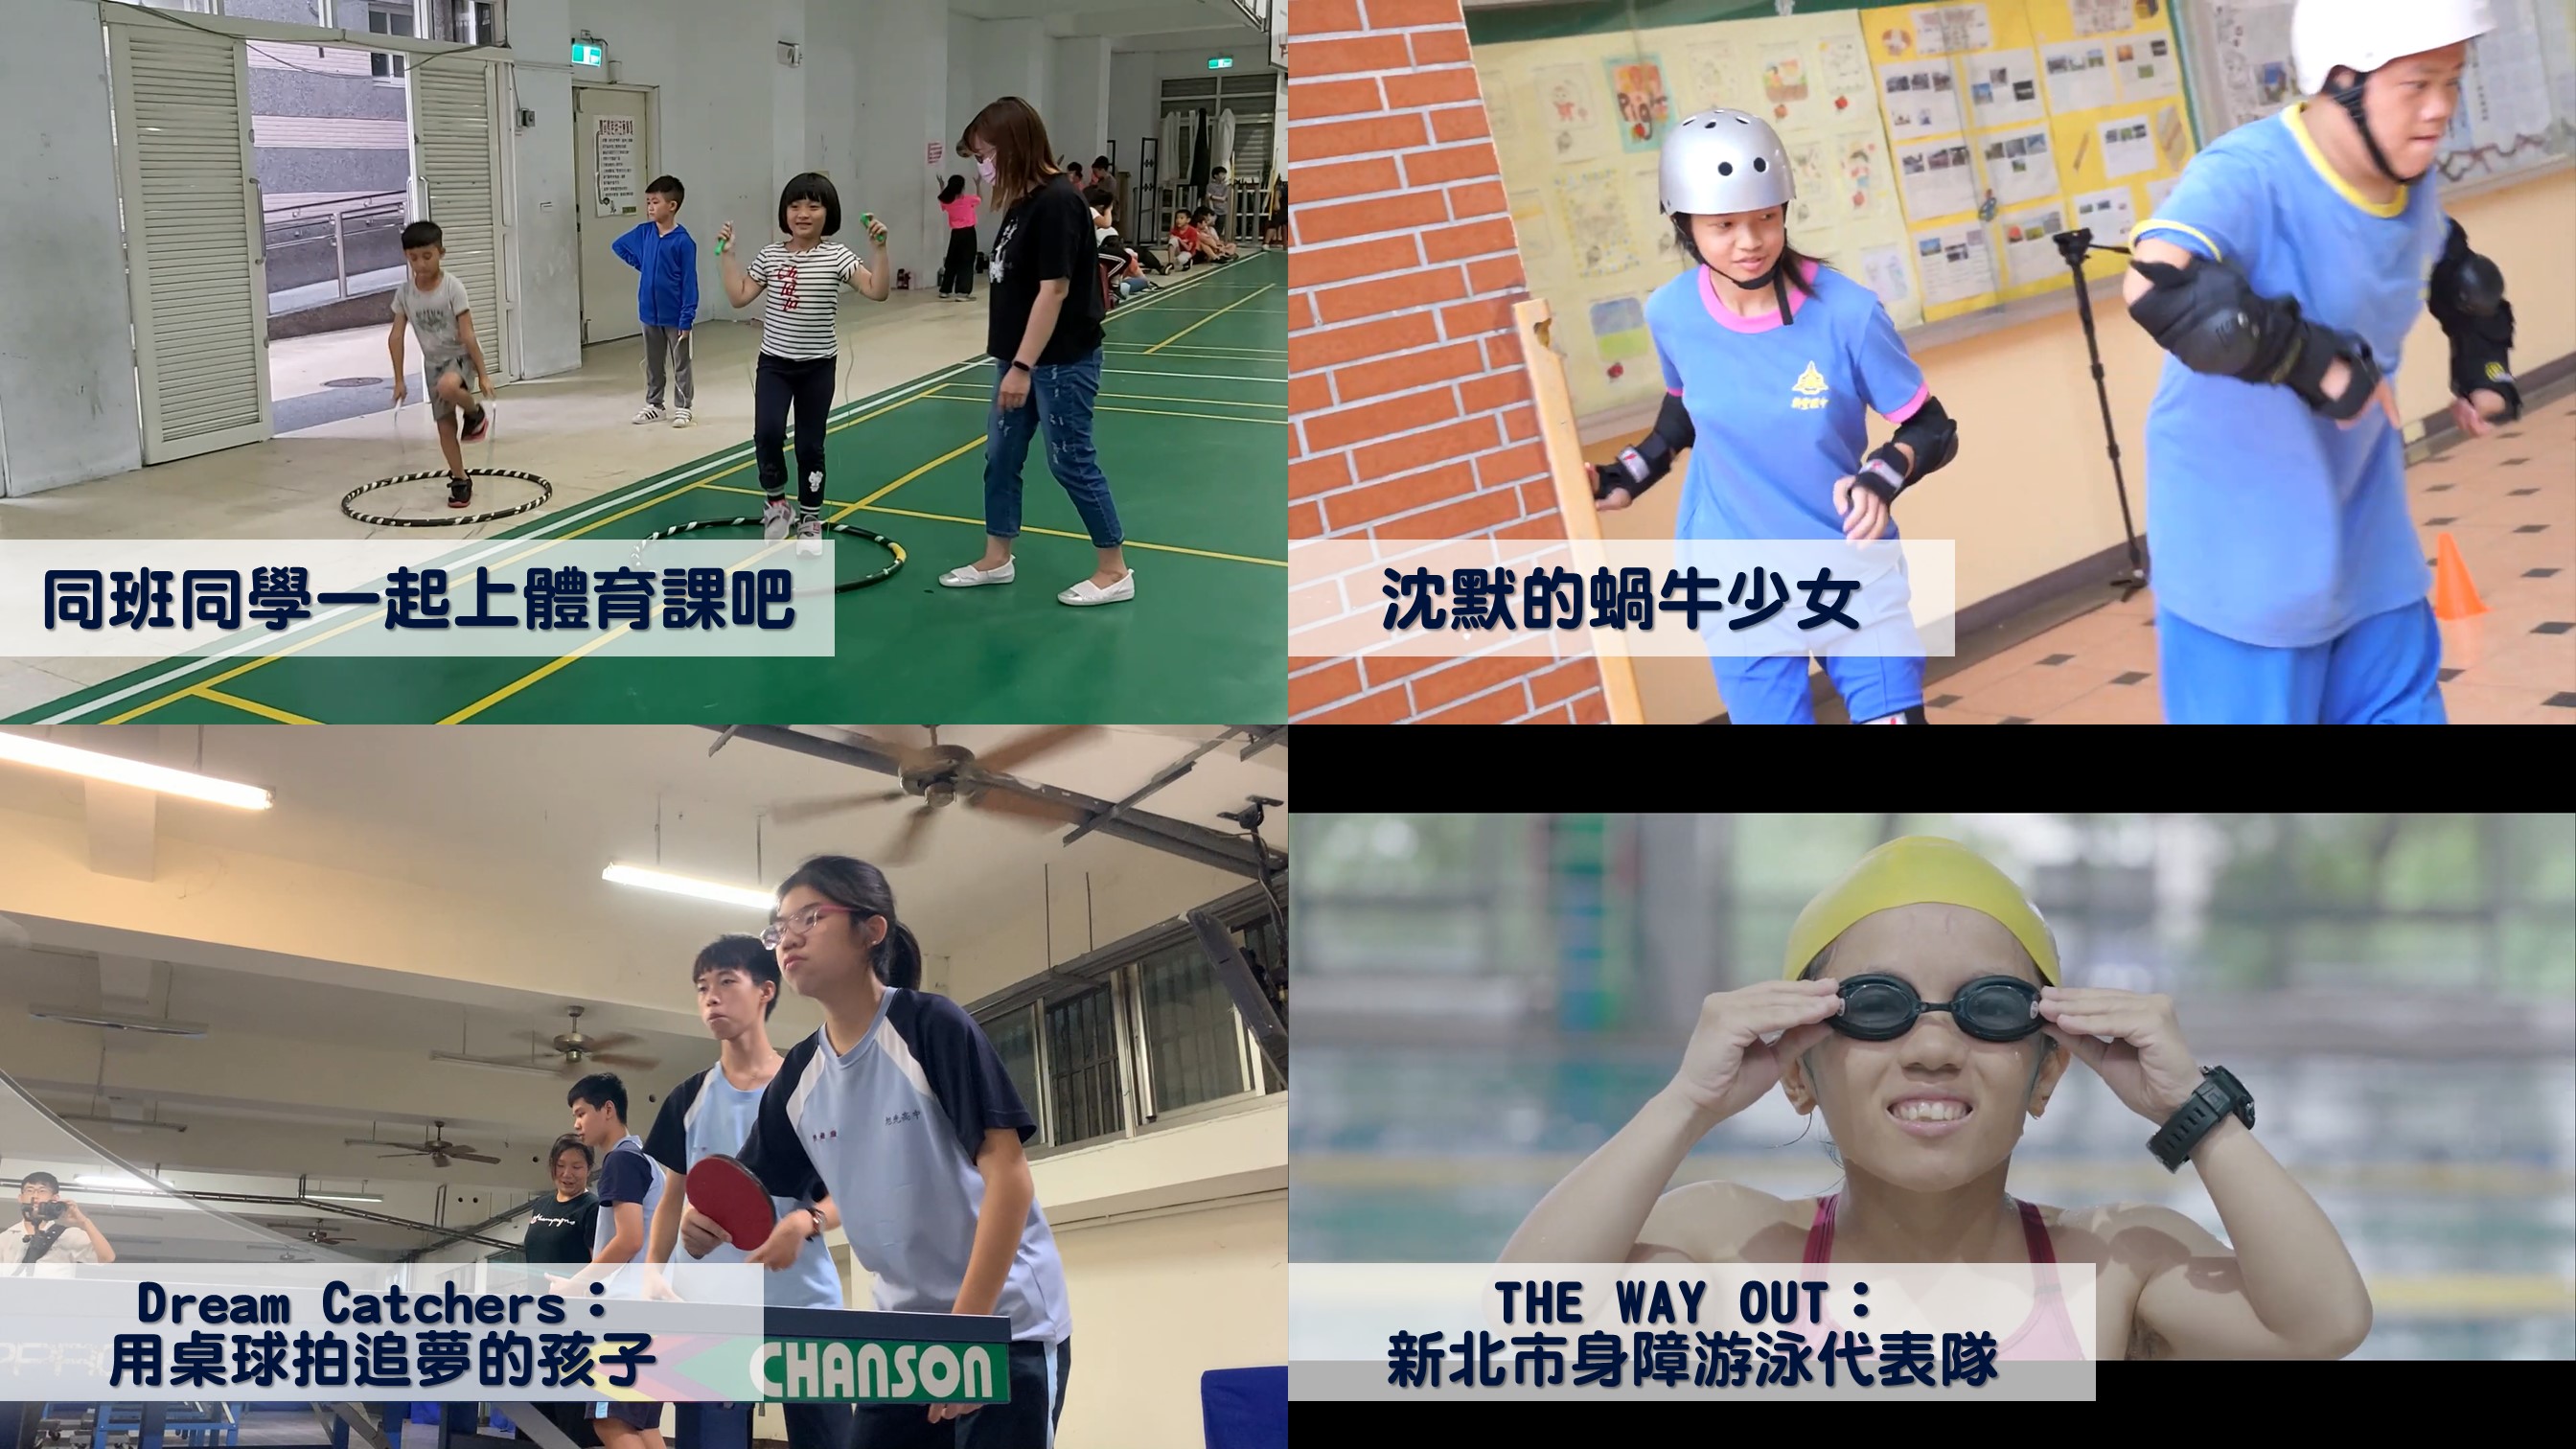 四部得獎作品呈現適應體育在各階段不同的樣貌（圖片來源：國立臺灣師範大學體育研究與發展中心）